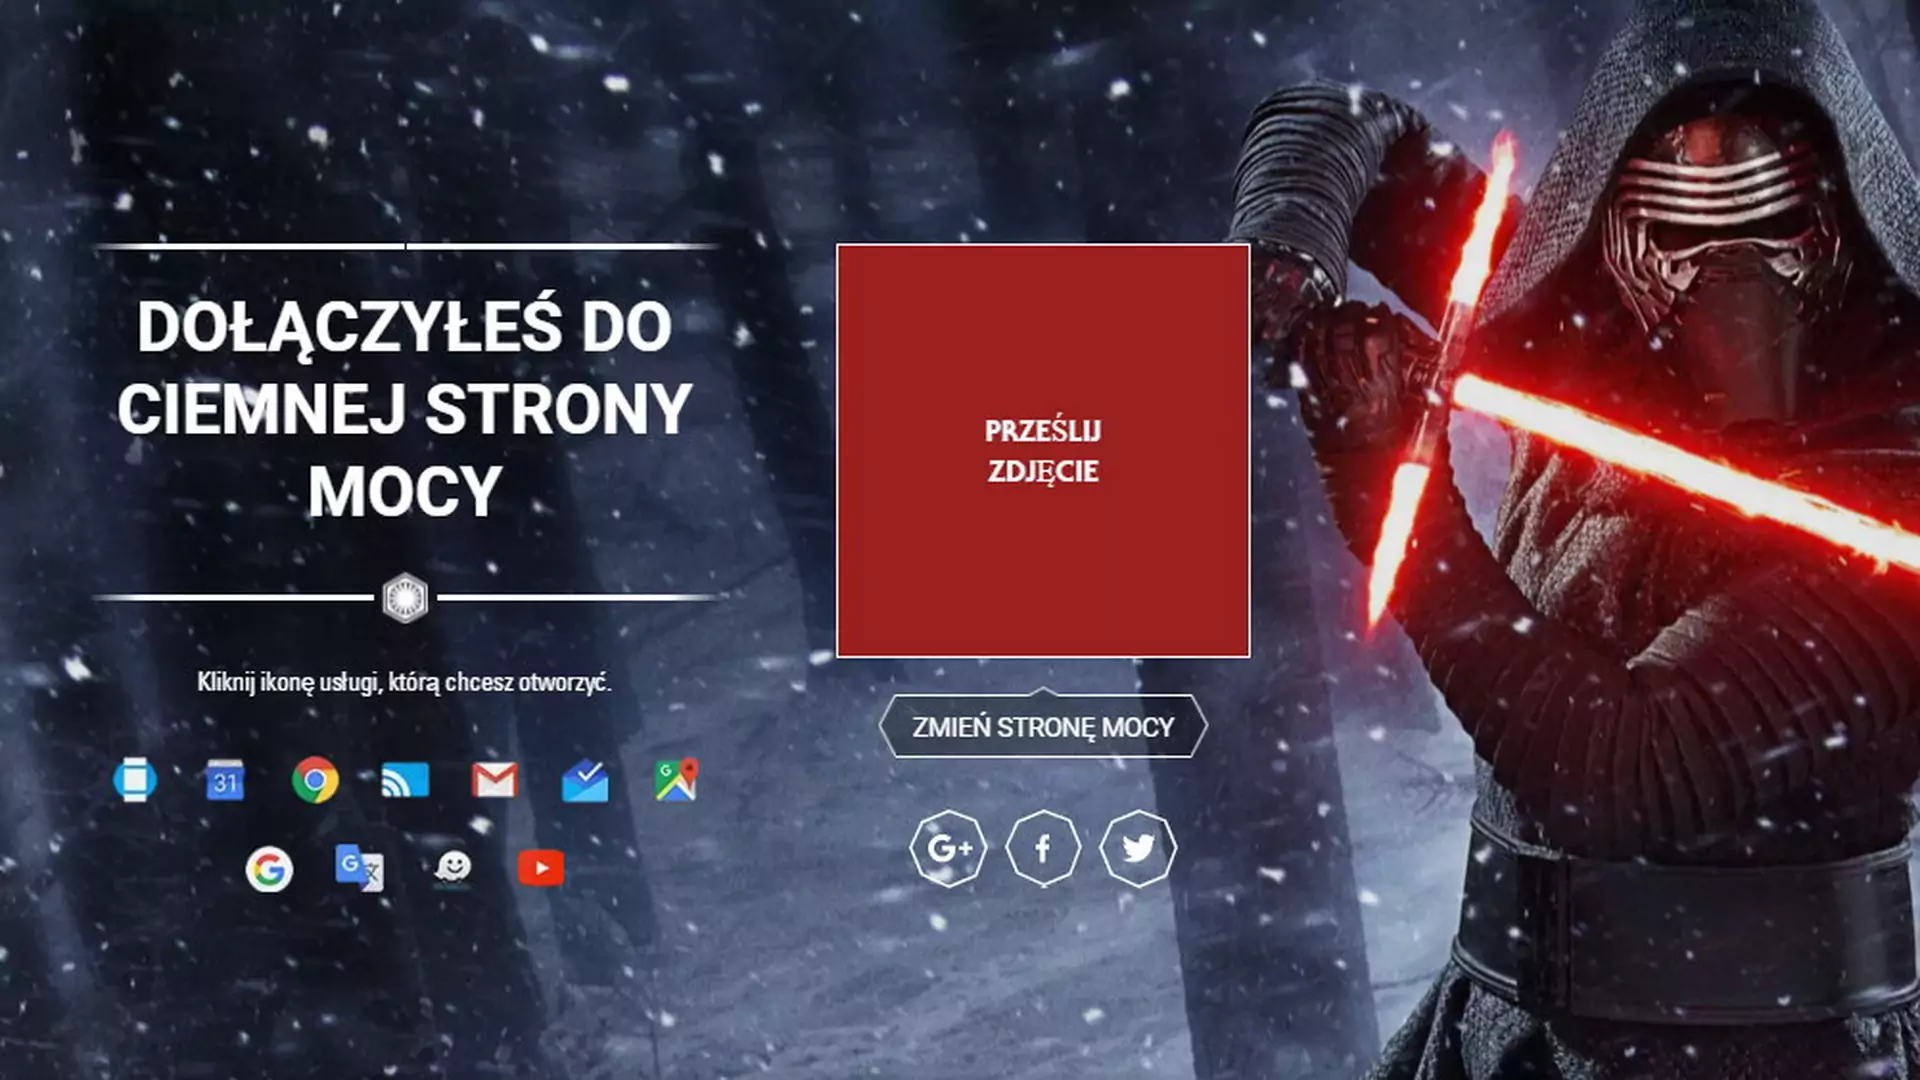 Genialna rzecz od Google dla fanów "Star Wars". Możecie calkowicie odmienić swoją pocztę i przeglądarkę